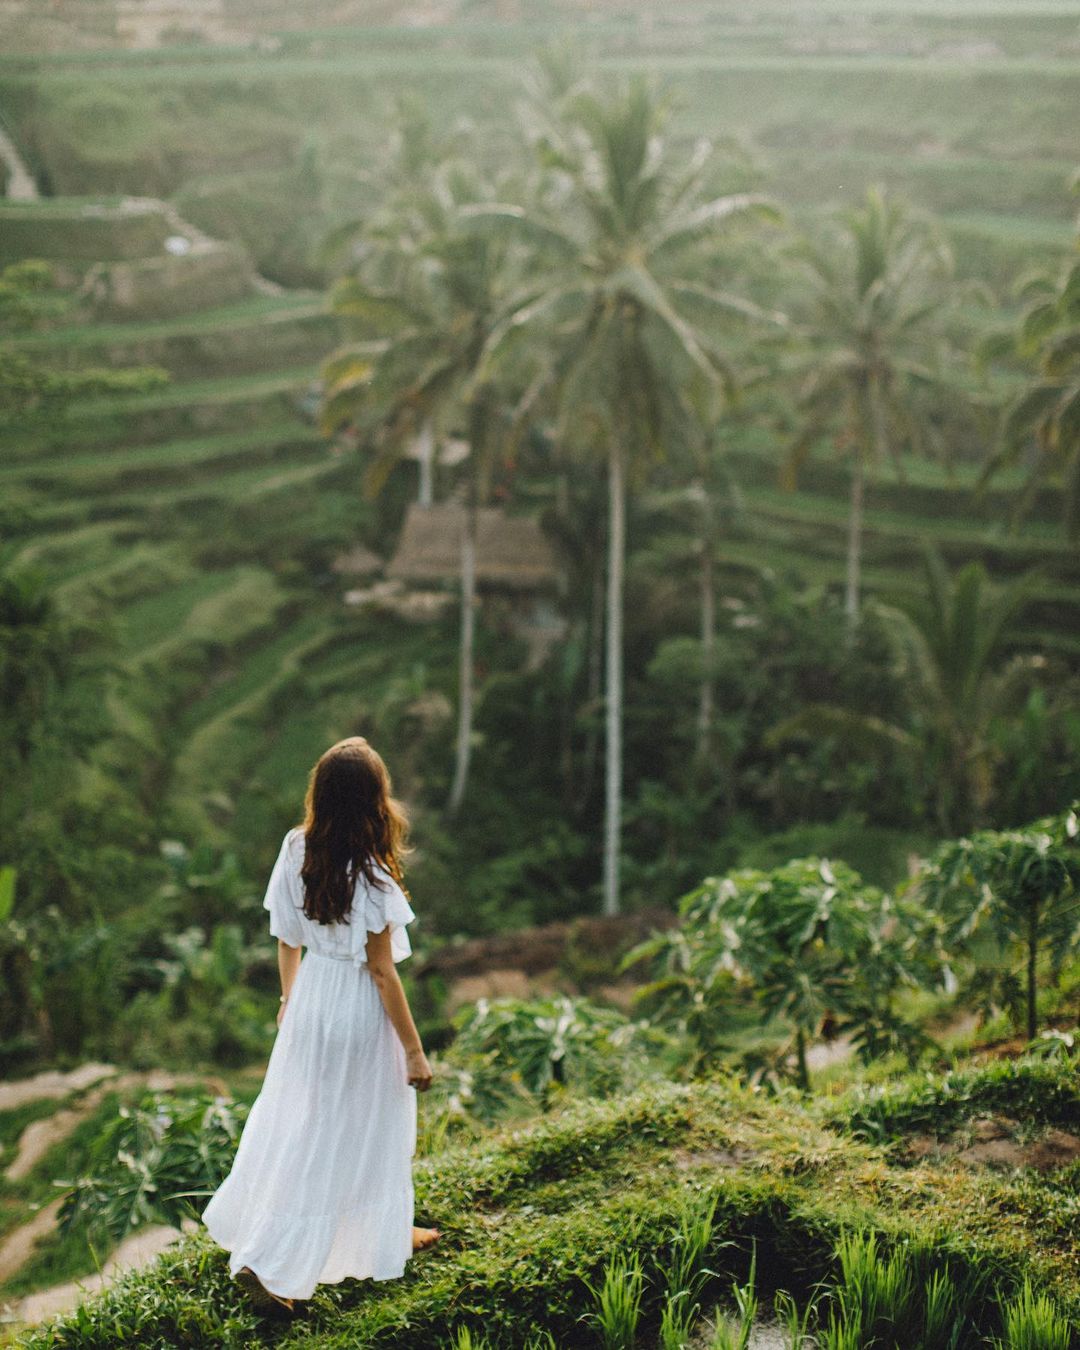 Снимки из путешествий Суты Рахади, каждый из которых можно считать признанием в любви нашей планете Рахади, нашем, самом, сердце, люблю, фиксировать, моменты, происходящие, восхитительном, фотографий, райском, острове, Индонезии”, говорит, фотограф, Читать, “Находясь, свадебных, Rahady, фокусируется